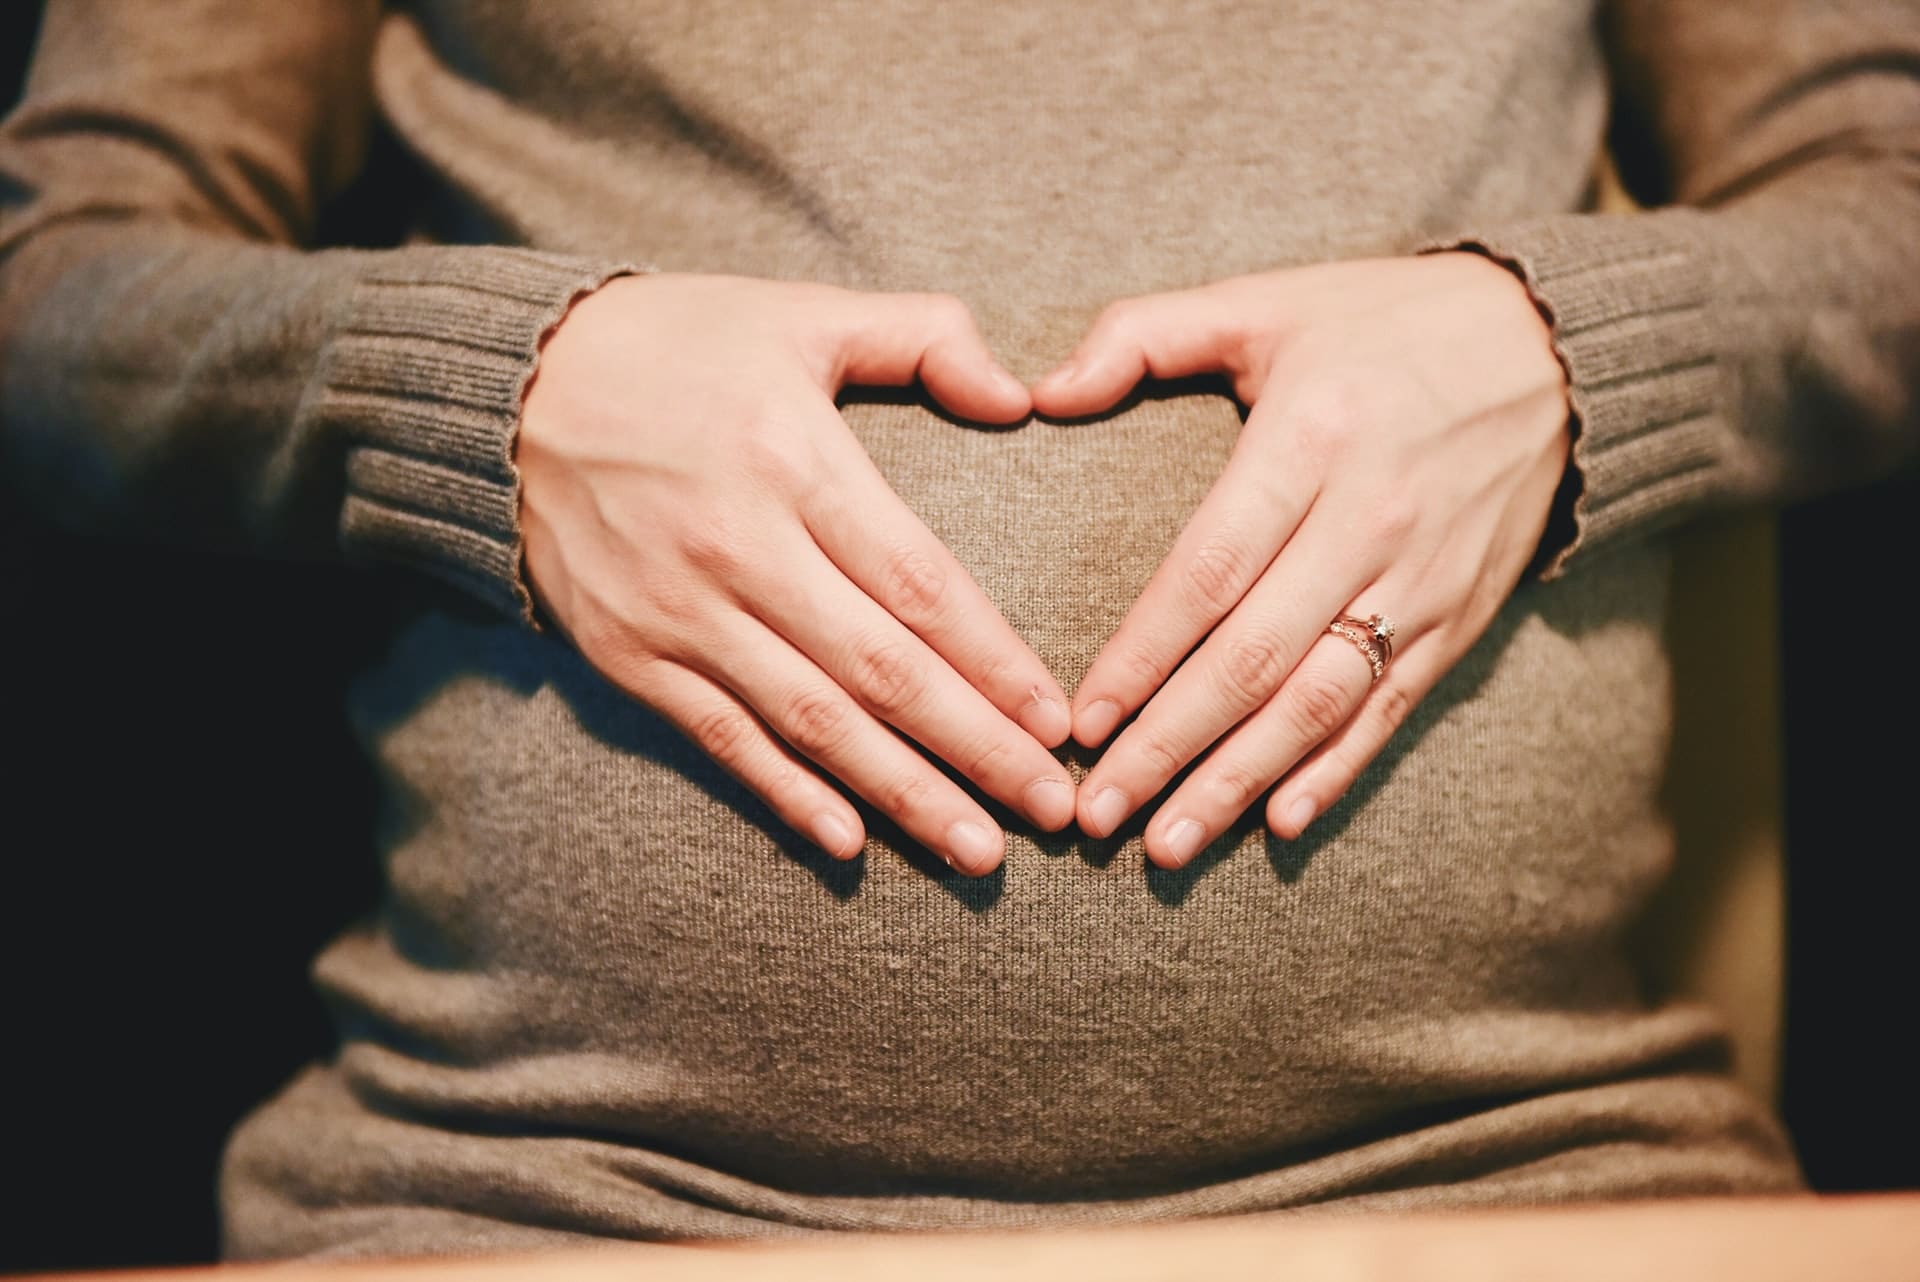 pregnancy detnal - 5 Must-Have Nursery Items